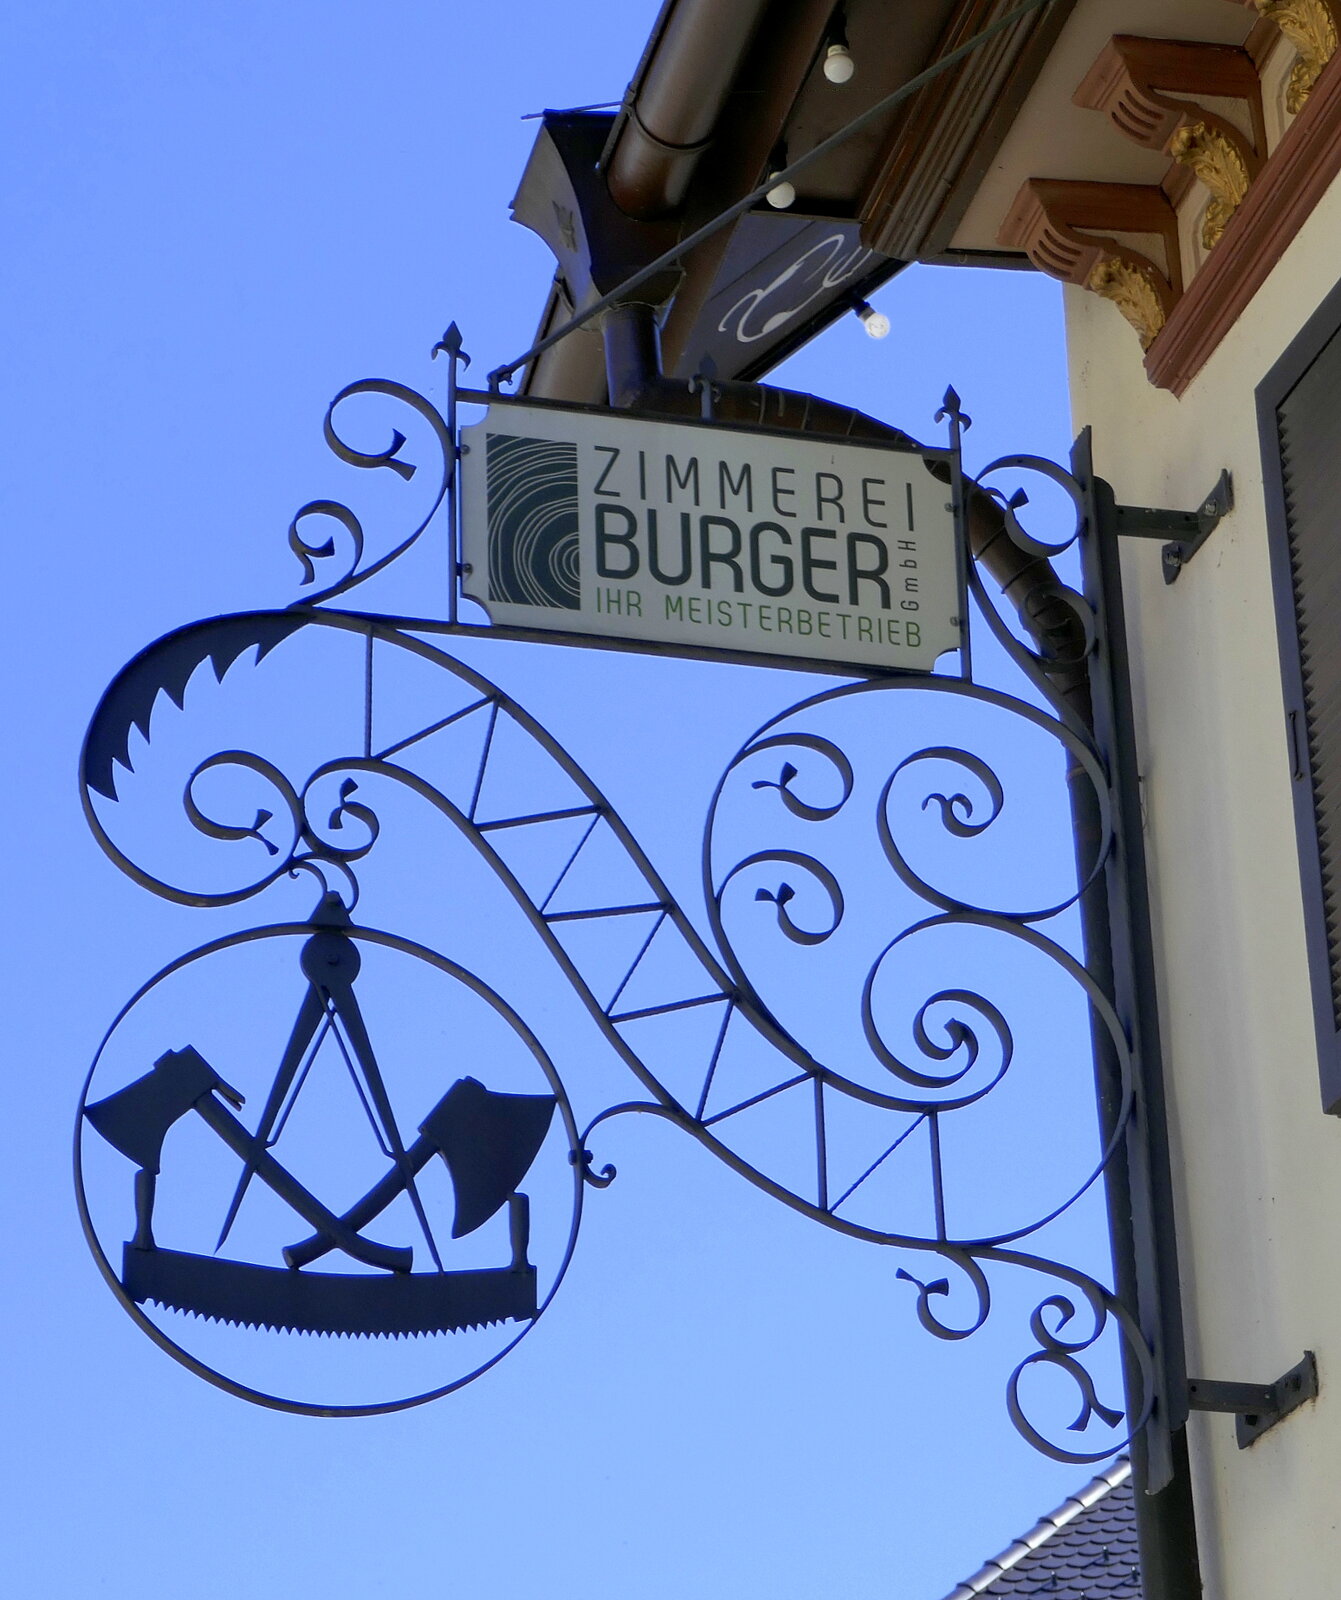 Elzach, Zimmerei Burger, Meisterbetrieb, Juli 2022